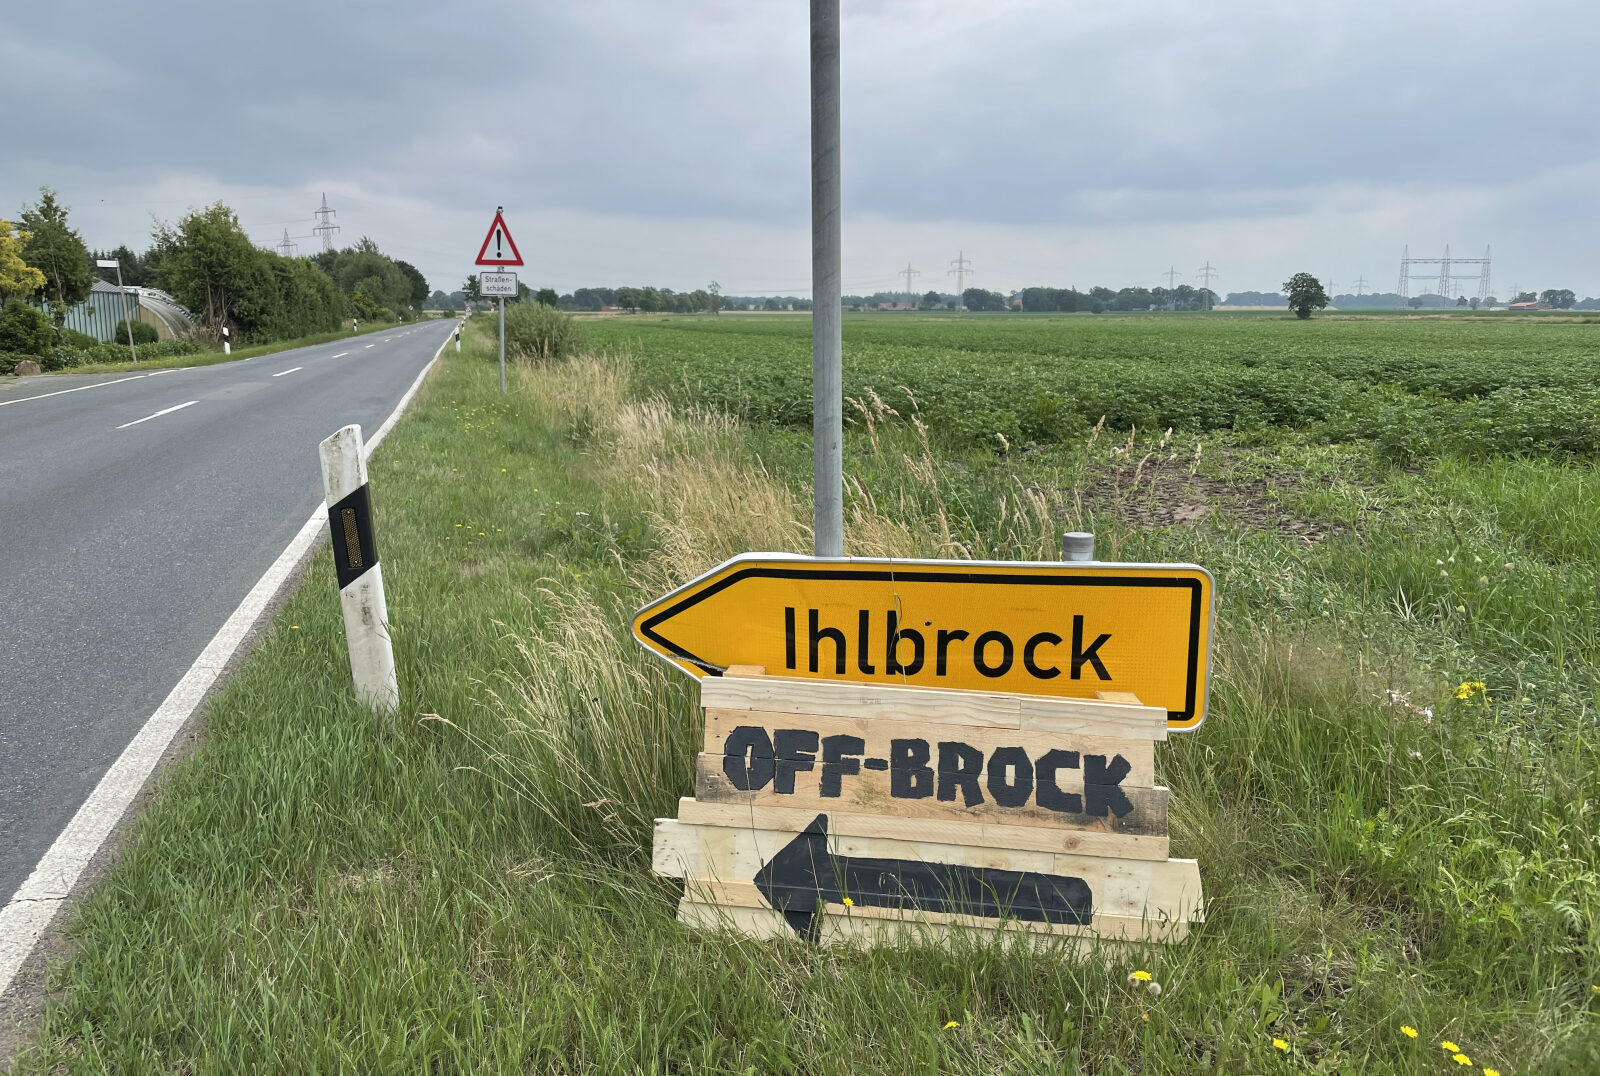 OFF-BROCK-Treffen - Auf nach Ihlbrock!